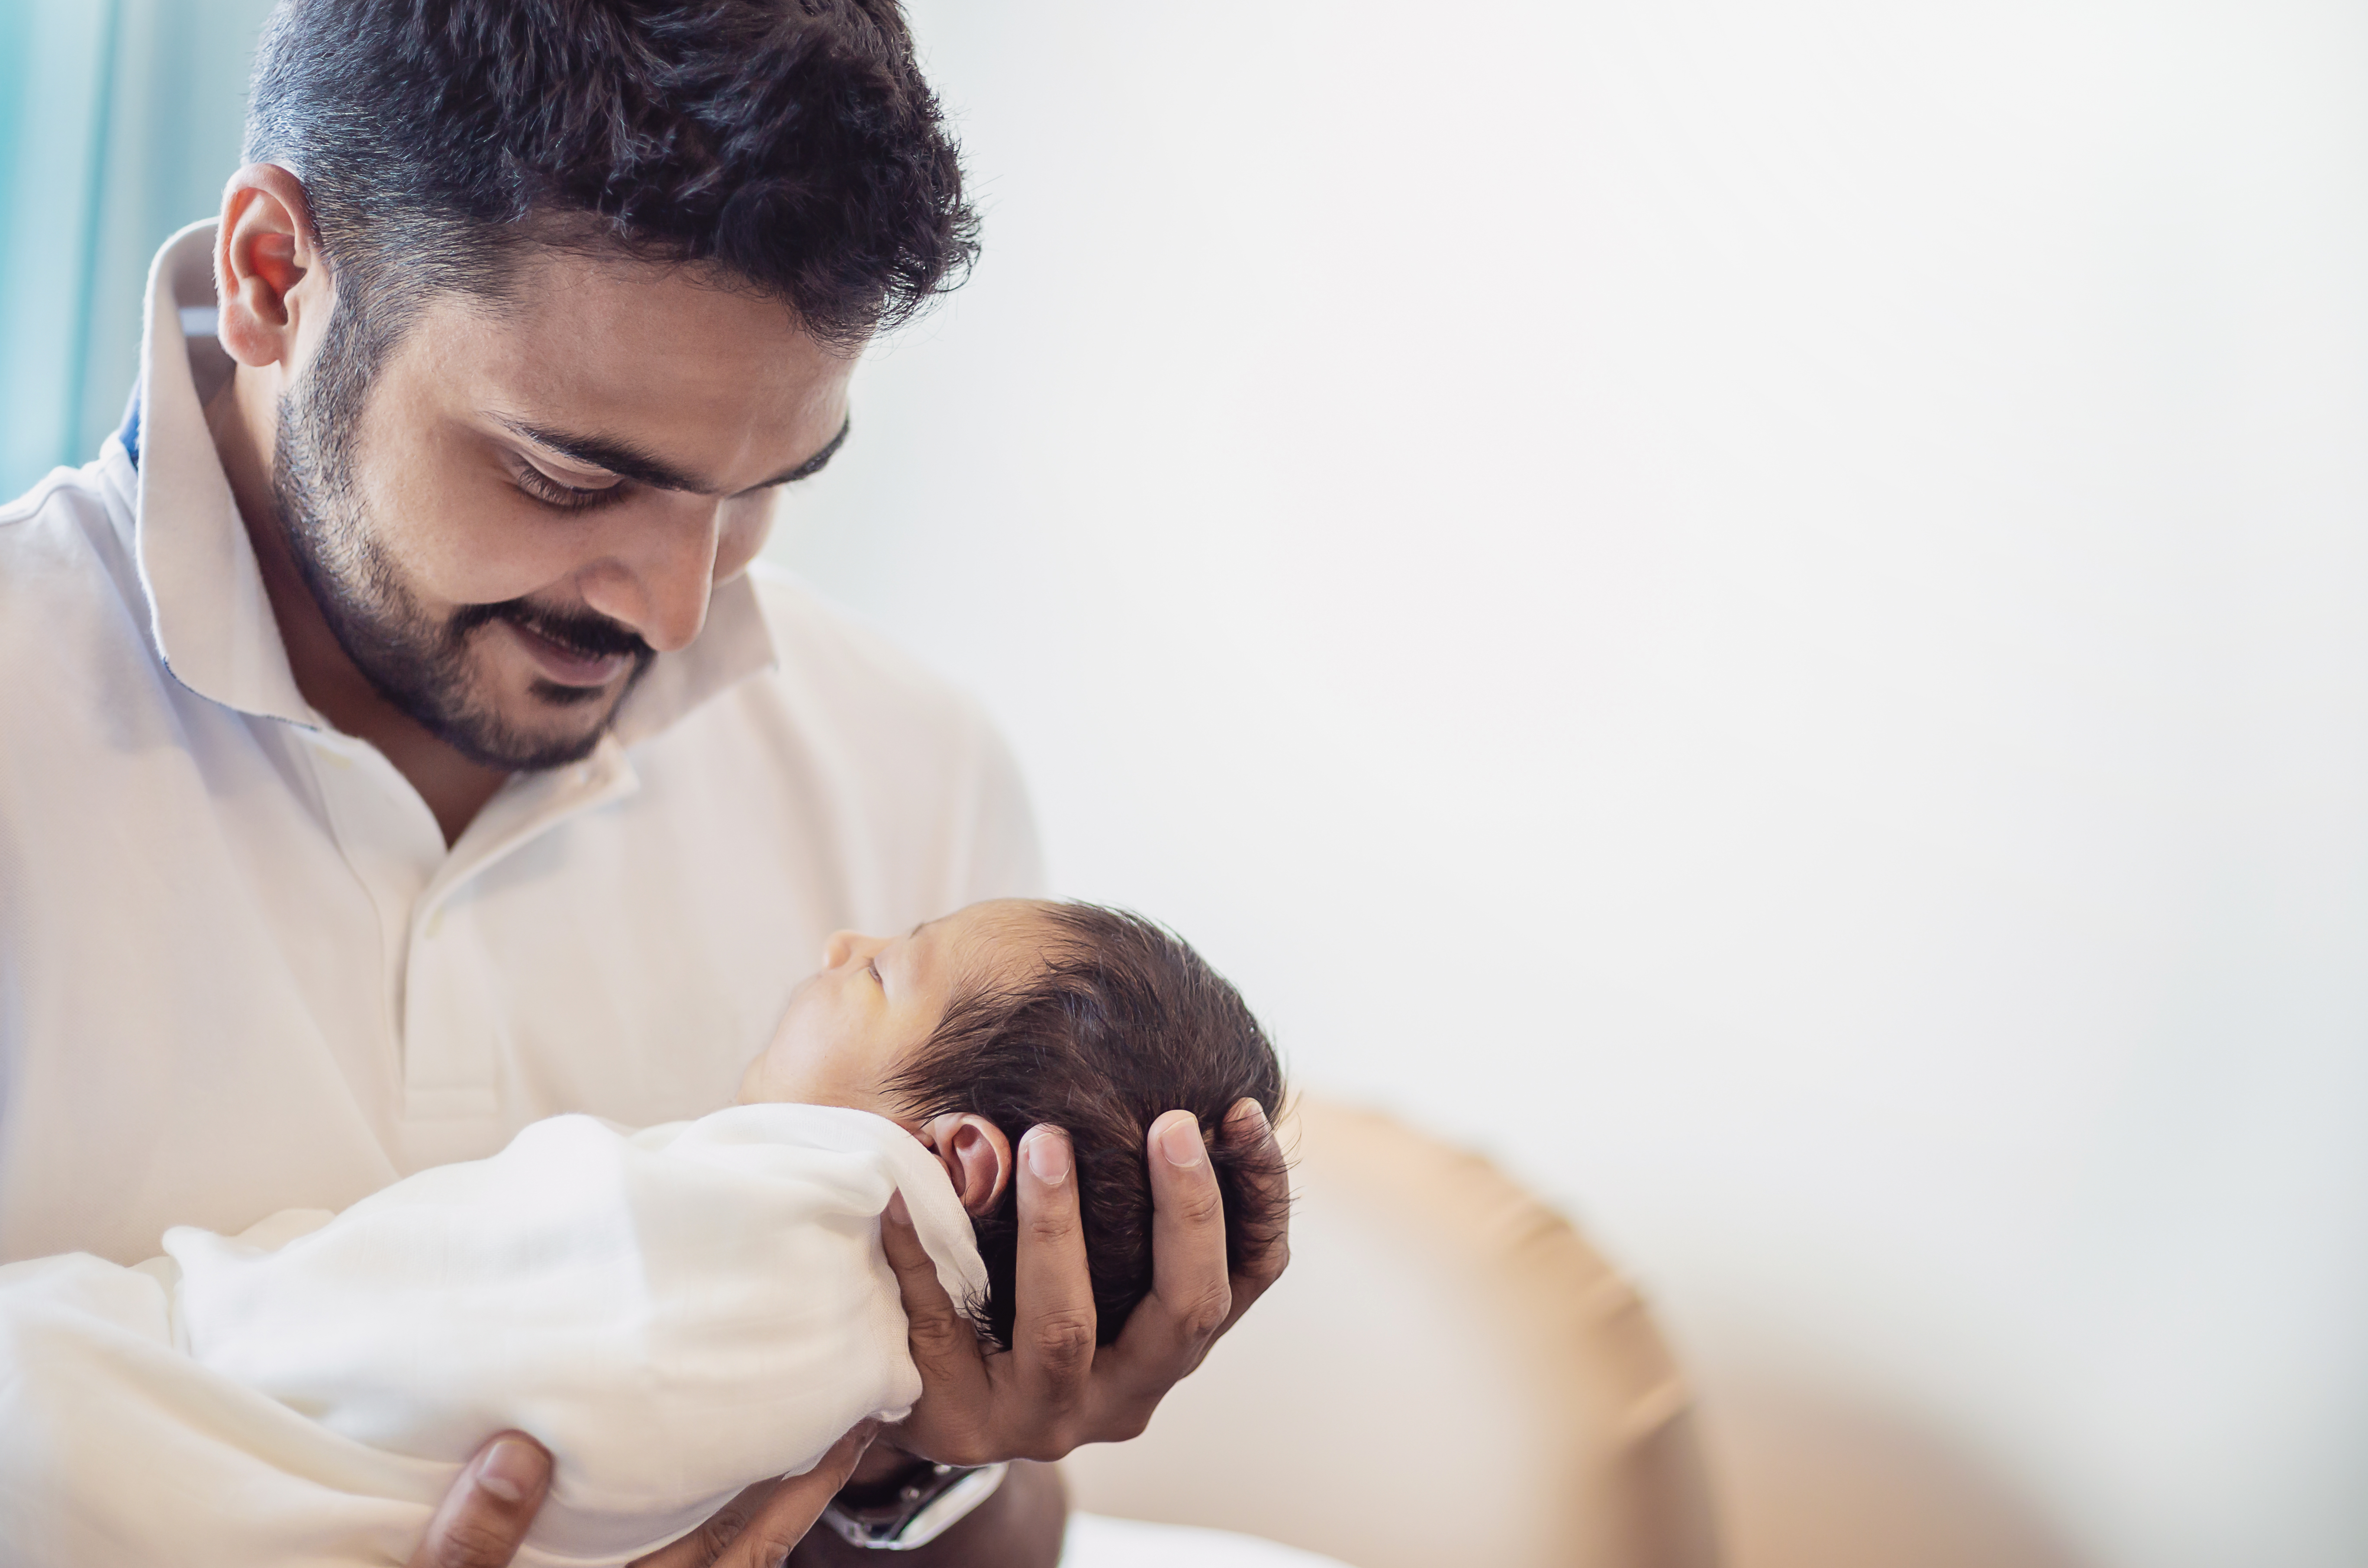 Un homme tenant un nouveau-né | Source : Shutterstock